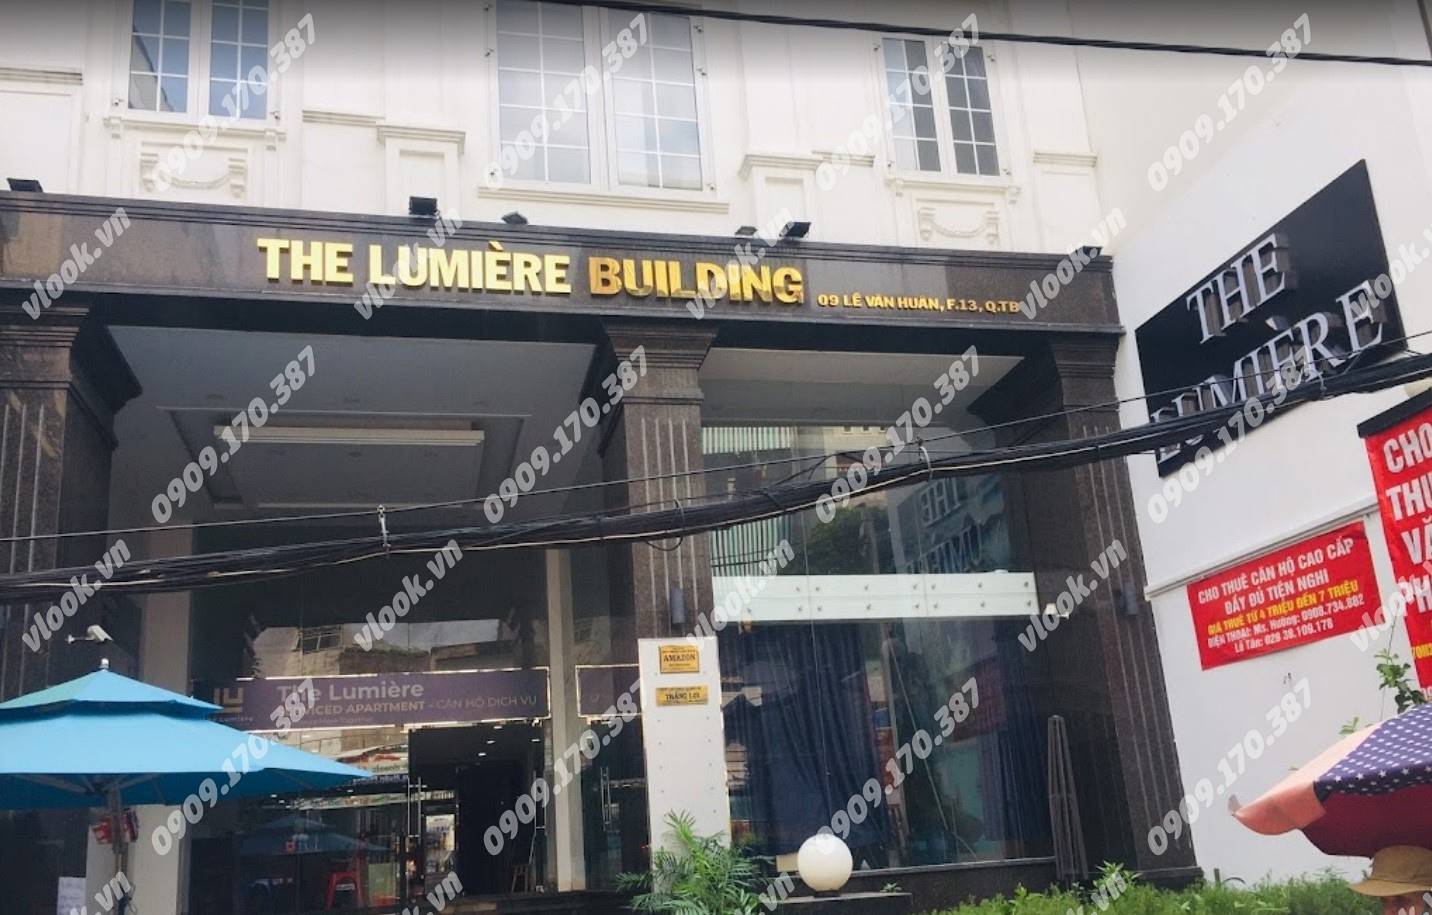 Cao ốc cho thuê văn phòng tòa nhà The Lumiere Building, Lê Văn Huân, Quận Tân Bình, TPHCM - vlook.vn